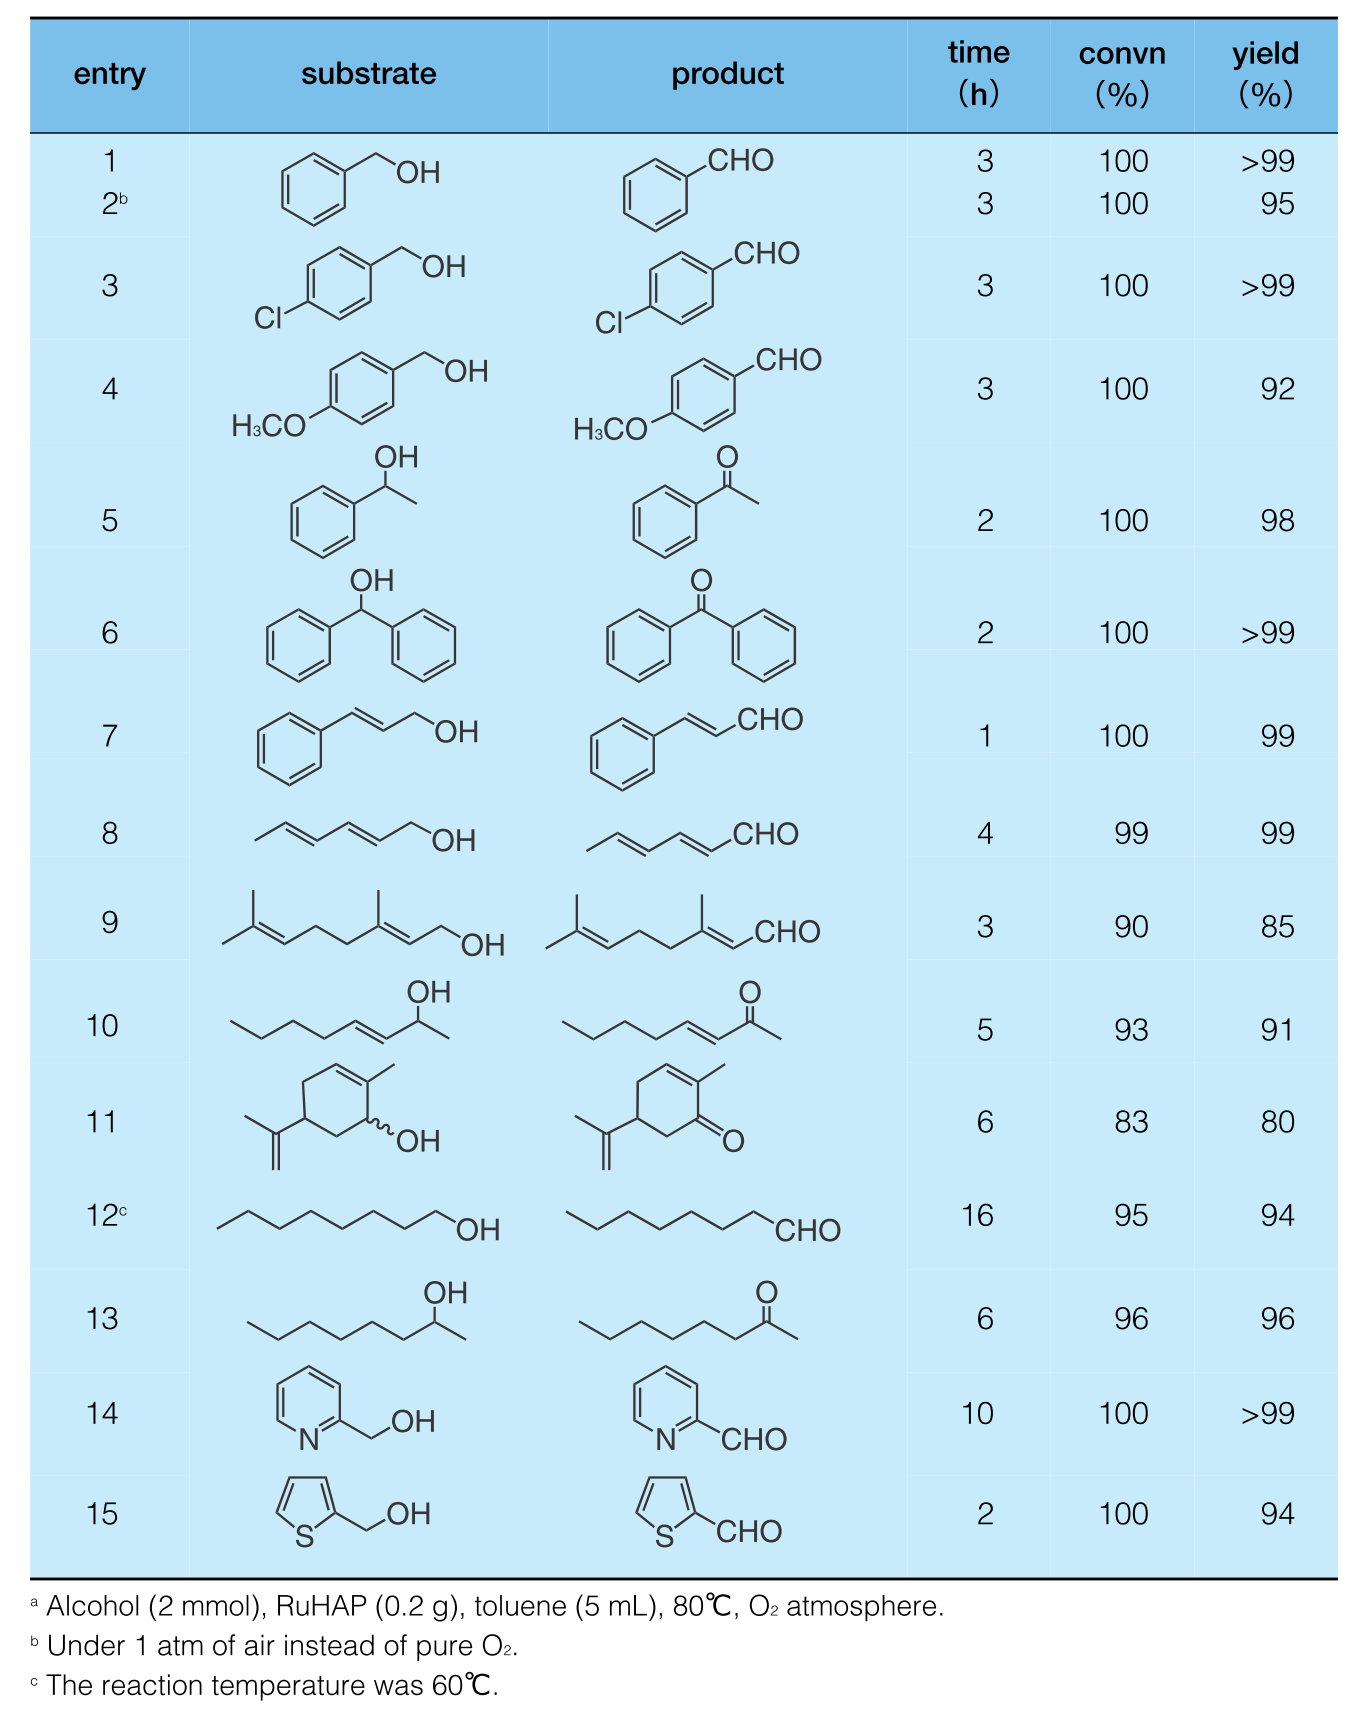 ヒドロキシアパタイト固定化ルテニウム触媒による環境調和型酸化反応